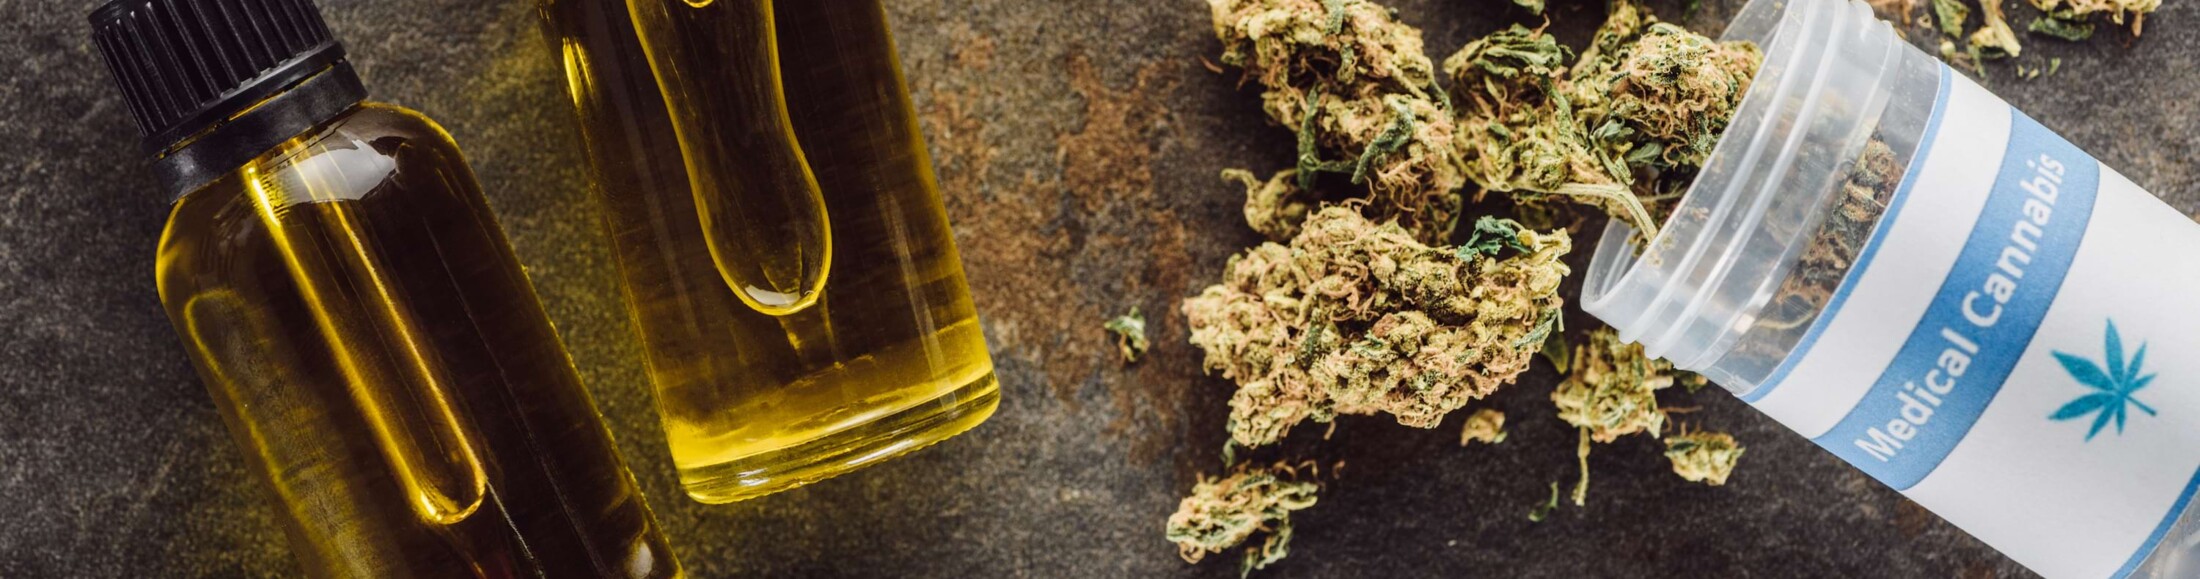 Phiolen mit Cannabis Öl, daneben das getrockneten pharmazeutische Cannabis